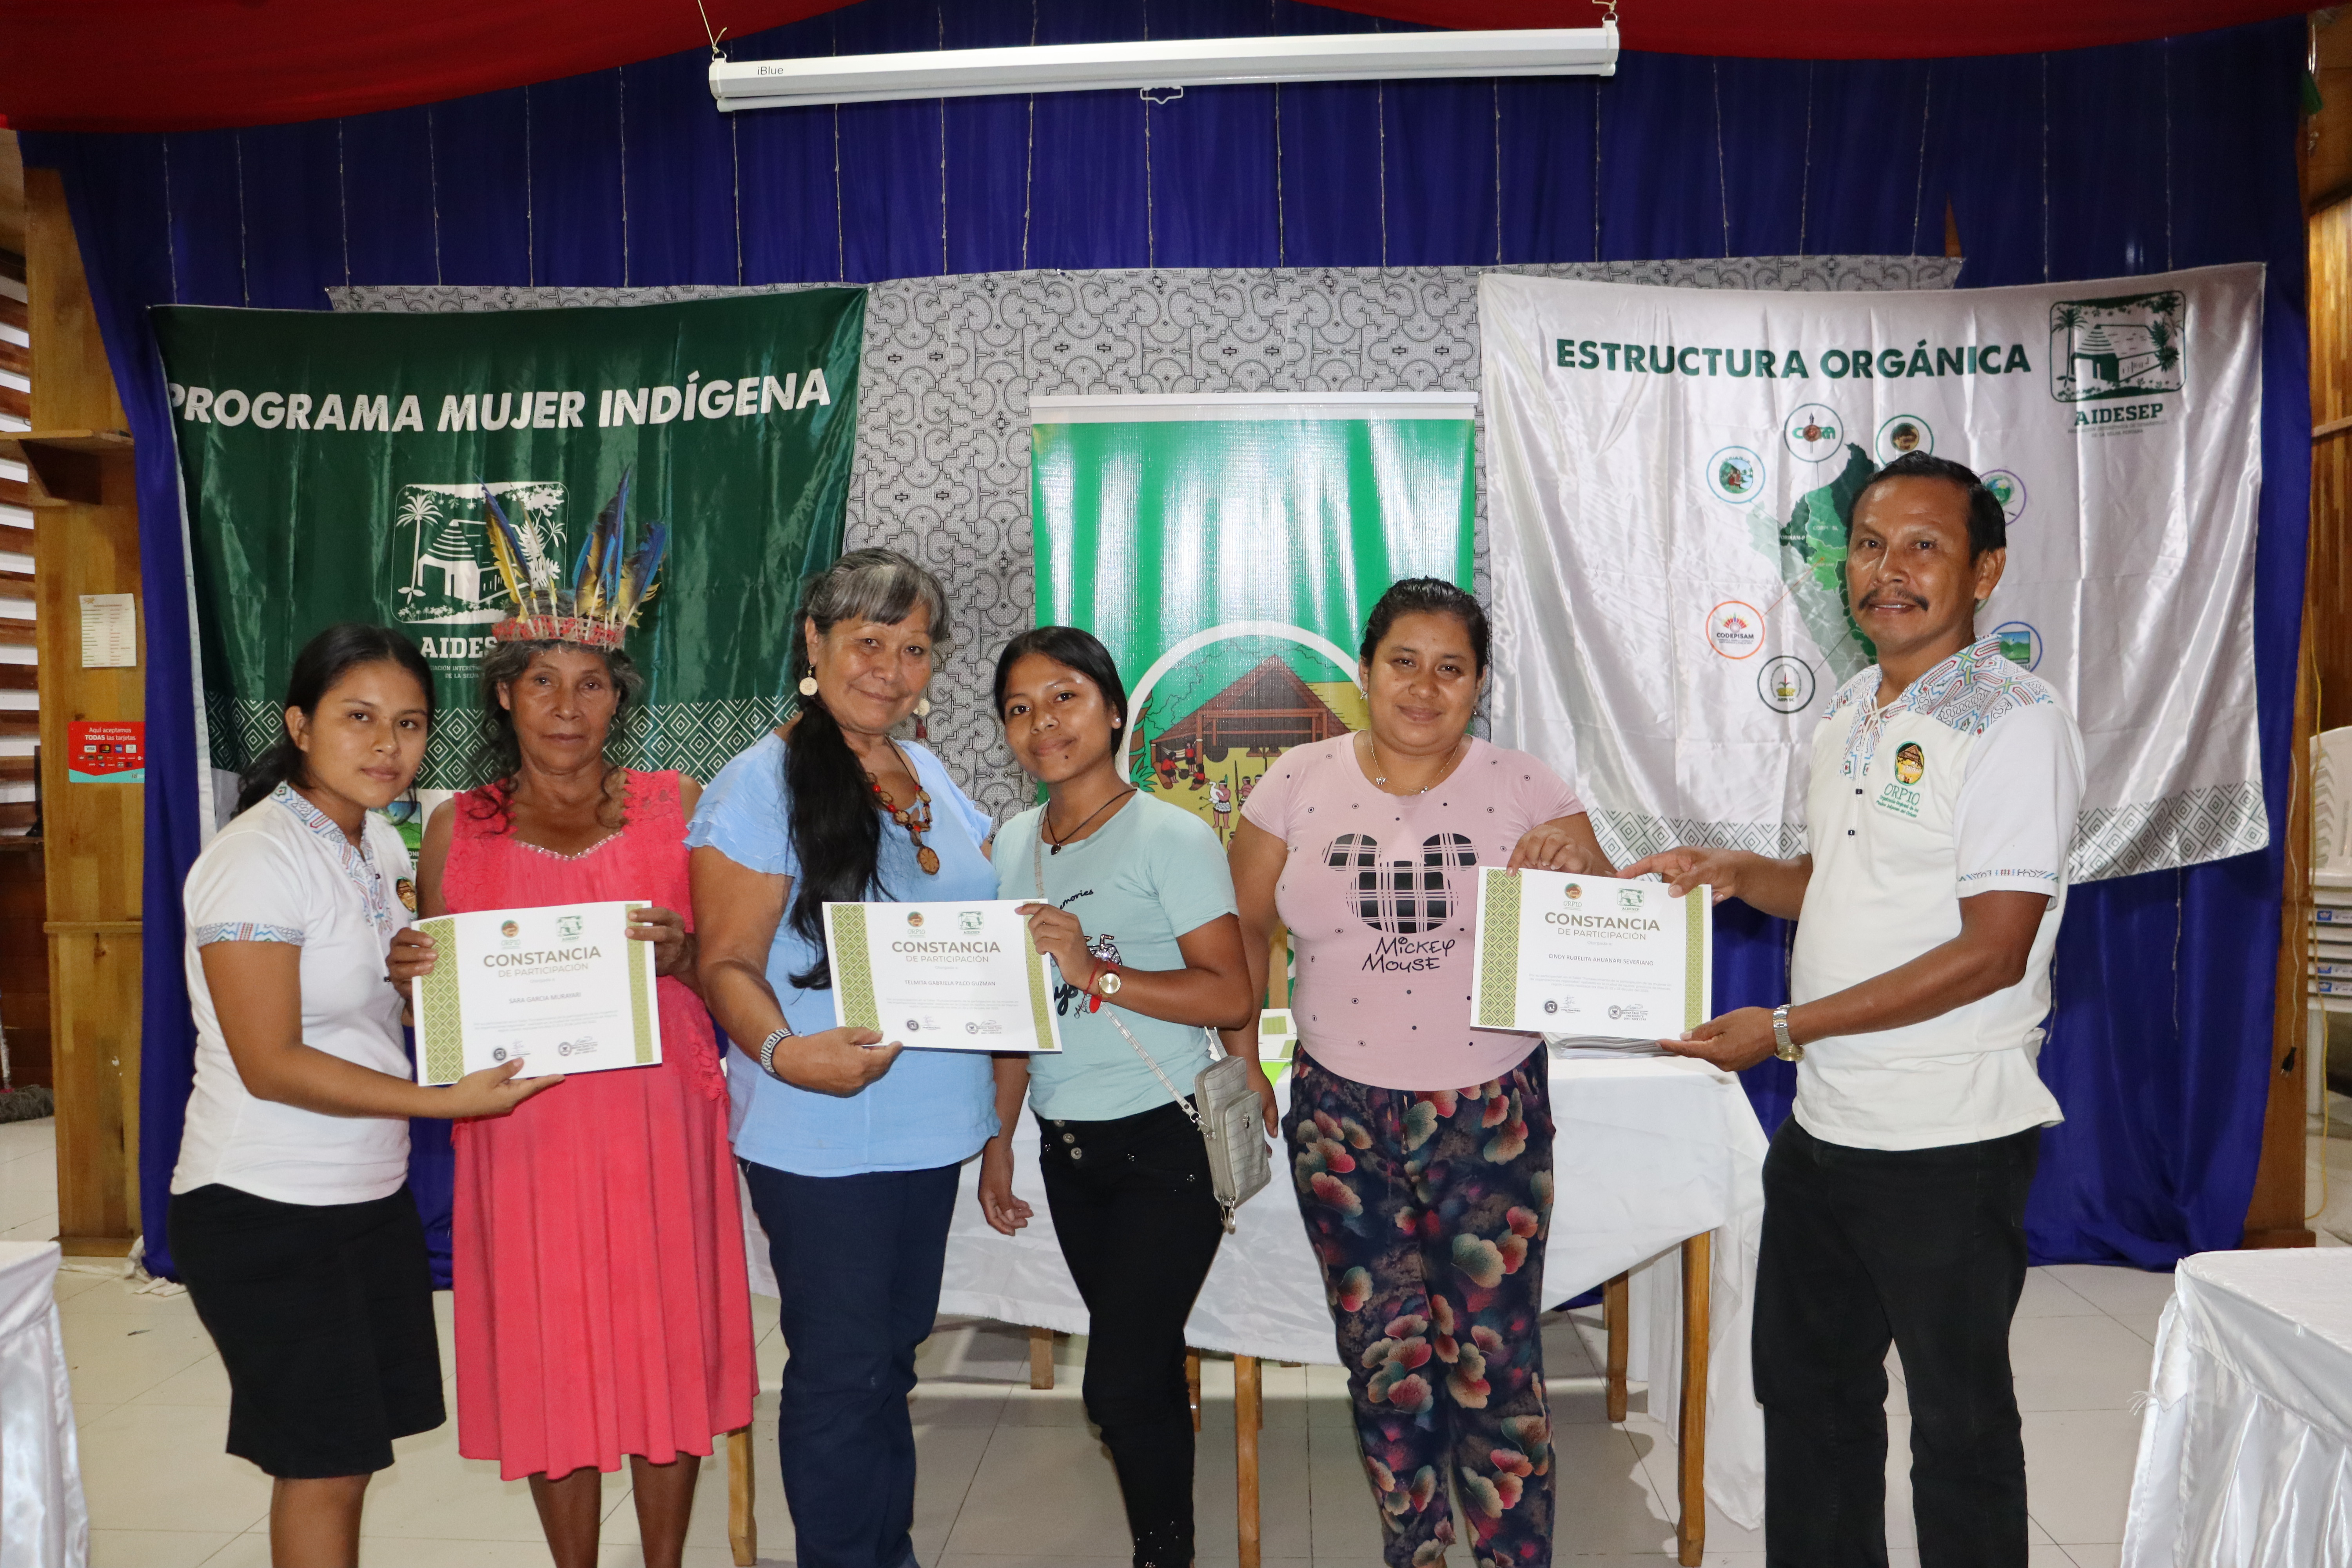 IMG 5172 Iquitos: Fortalecimiento de lideresas indígenas del Programa Mujer ORPIO